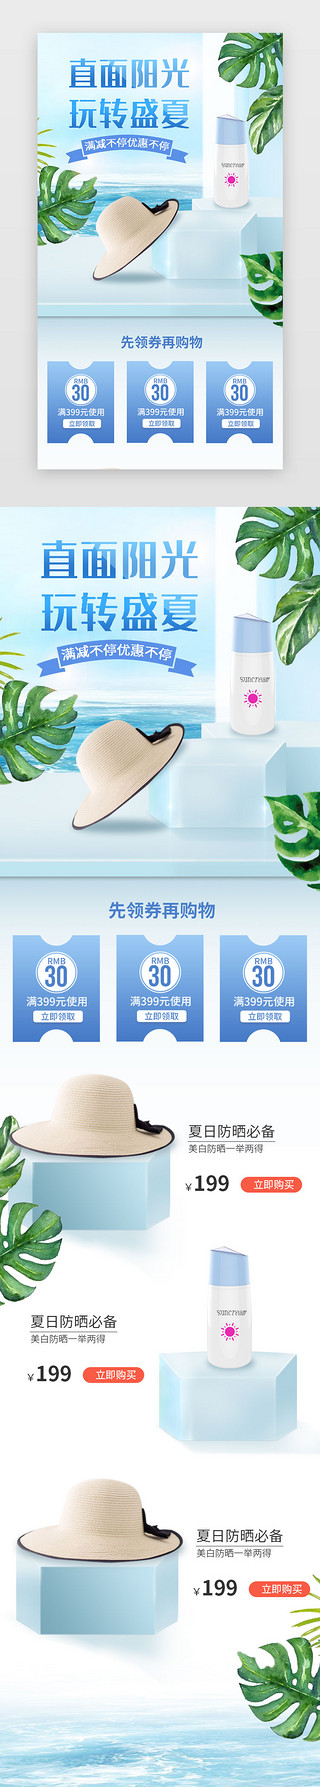 乐享夏日好时光UI设计素材_电商蓝色清新夏日防晒夏季促销H5长图